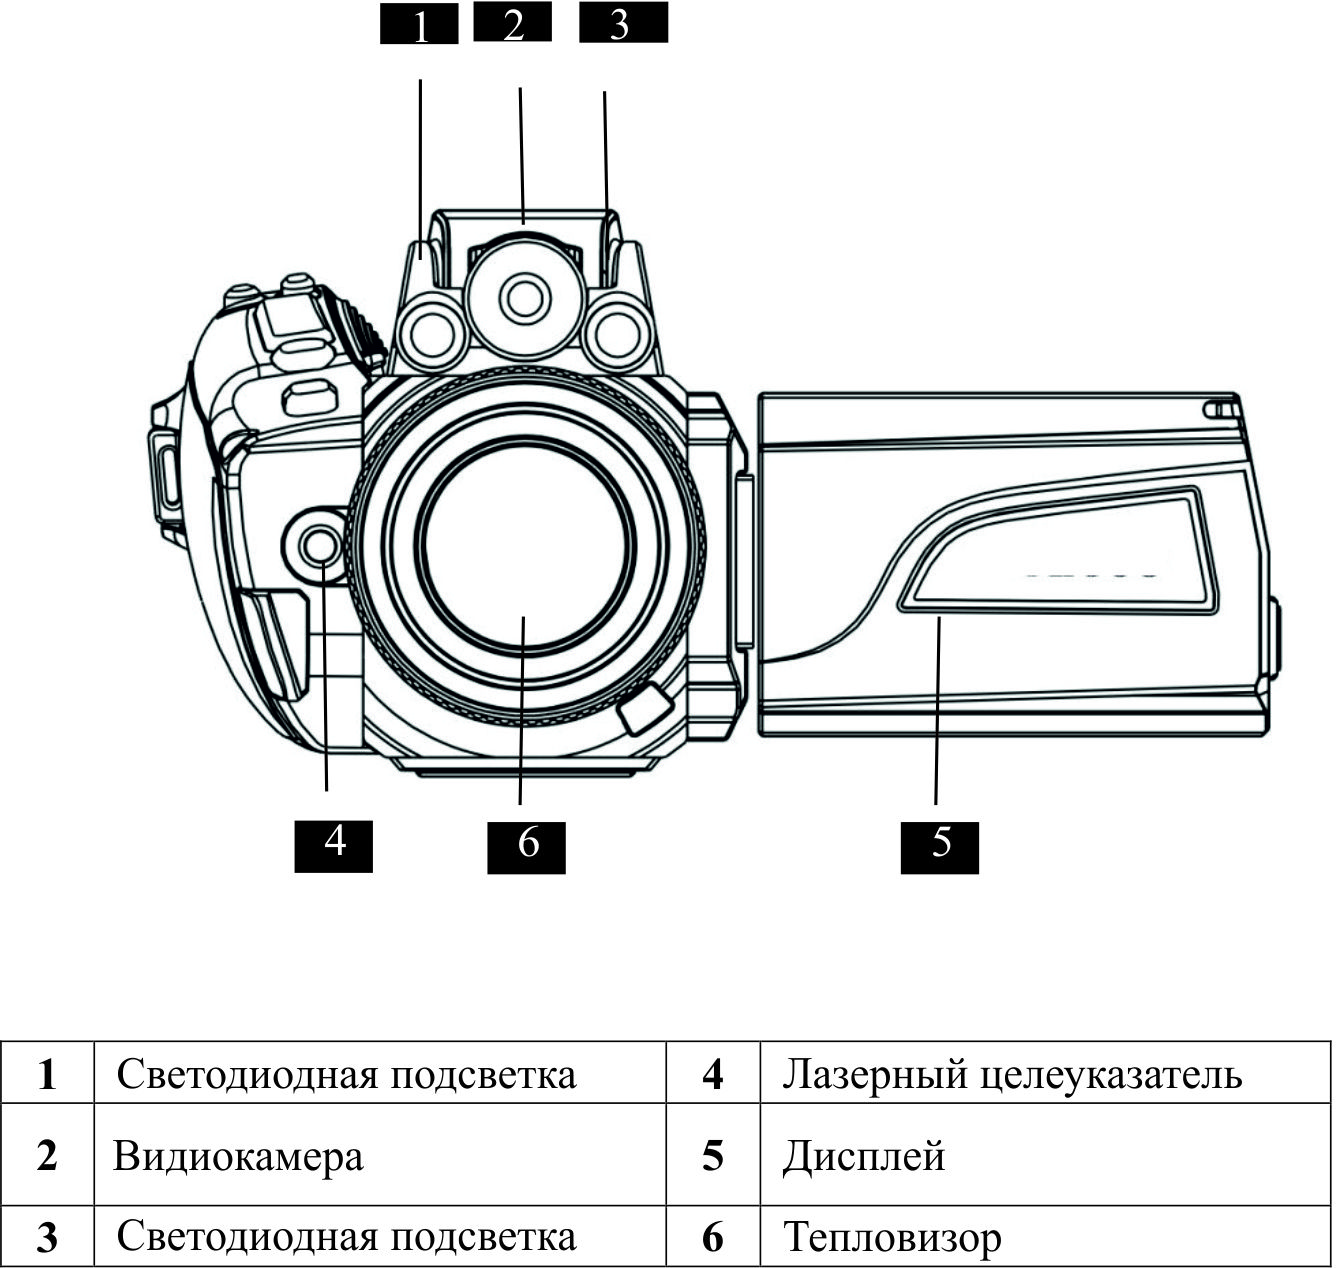 Фронтальный вид газодетекторной тепловизионной камеры V80/90